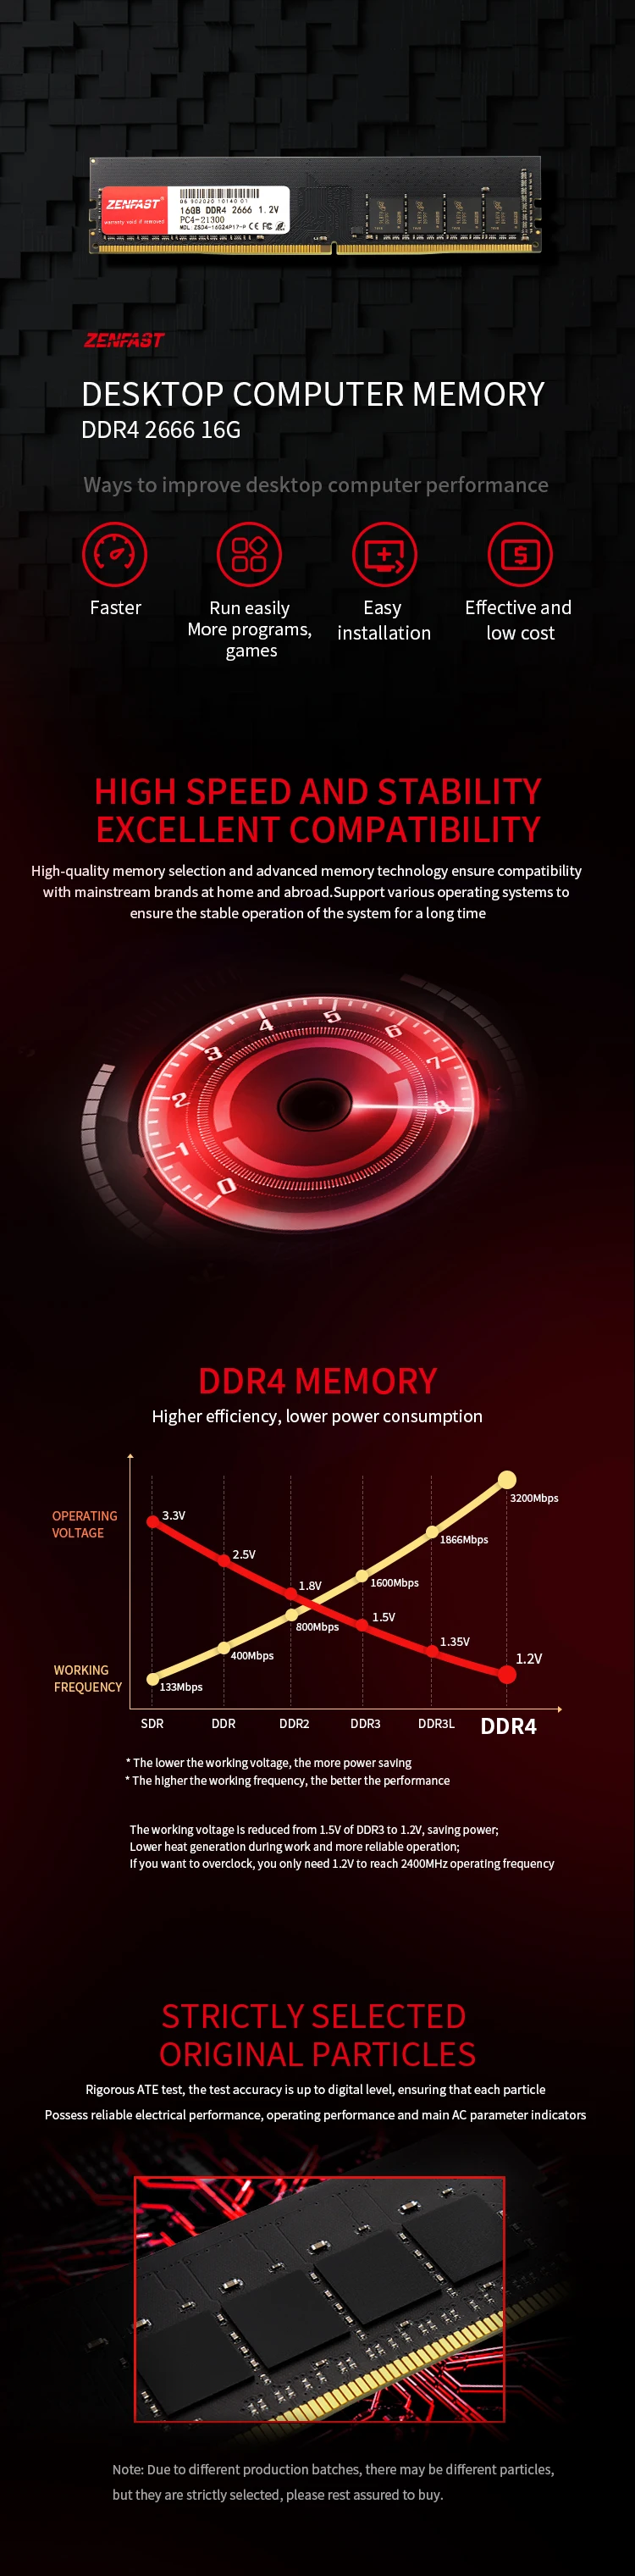 High-Quality Server Memory